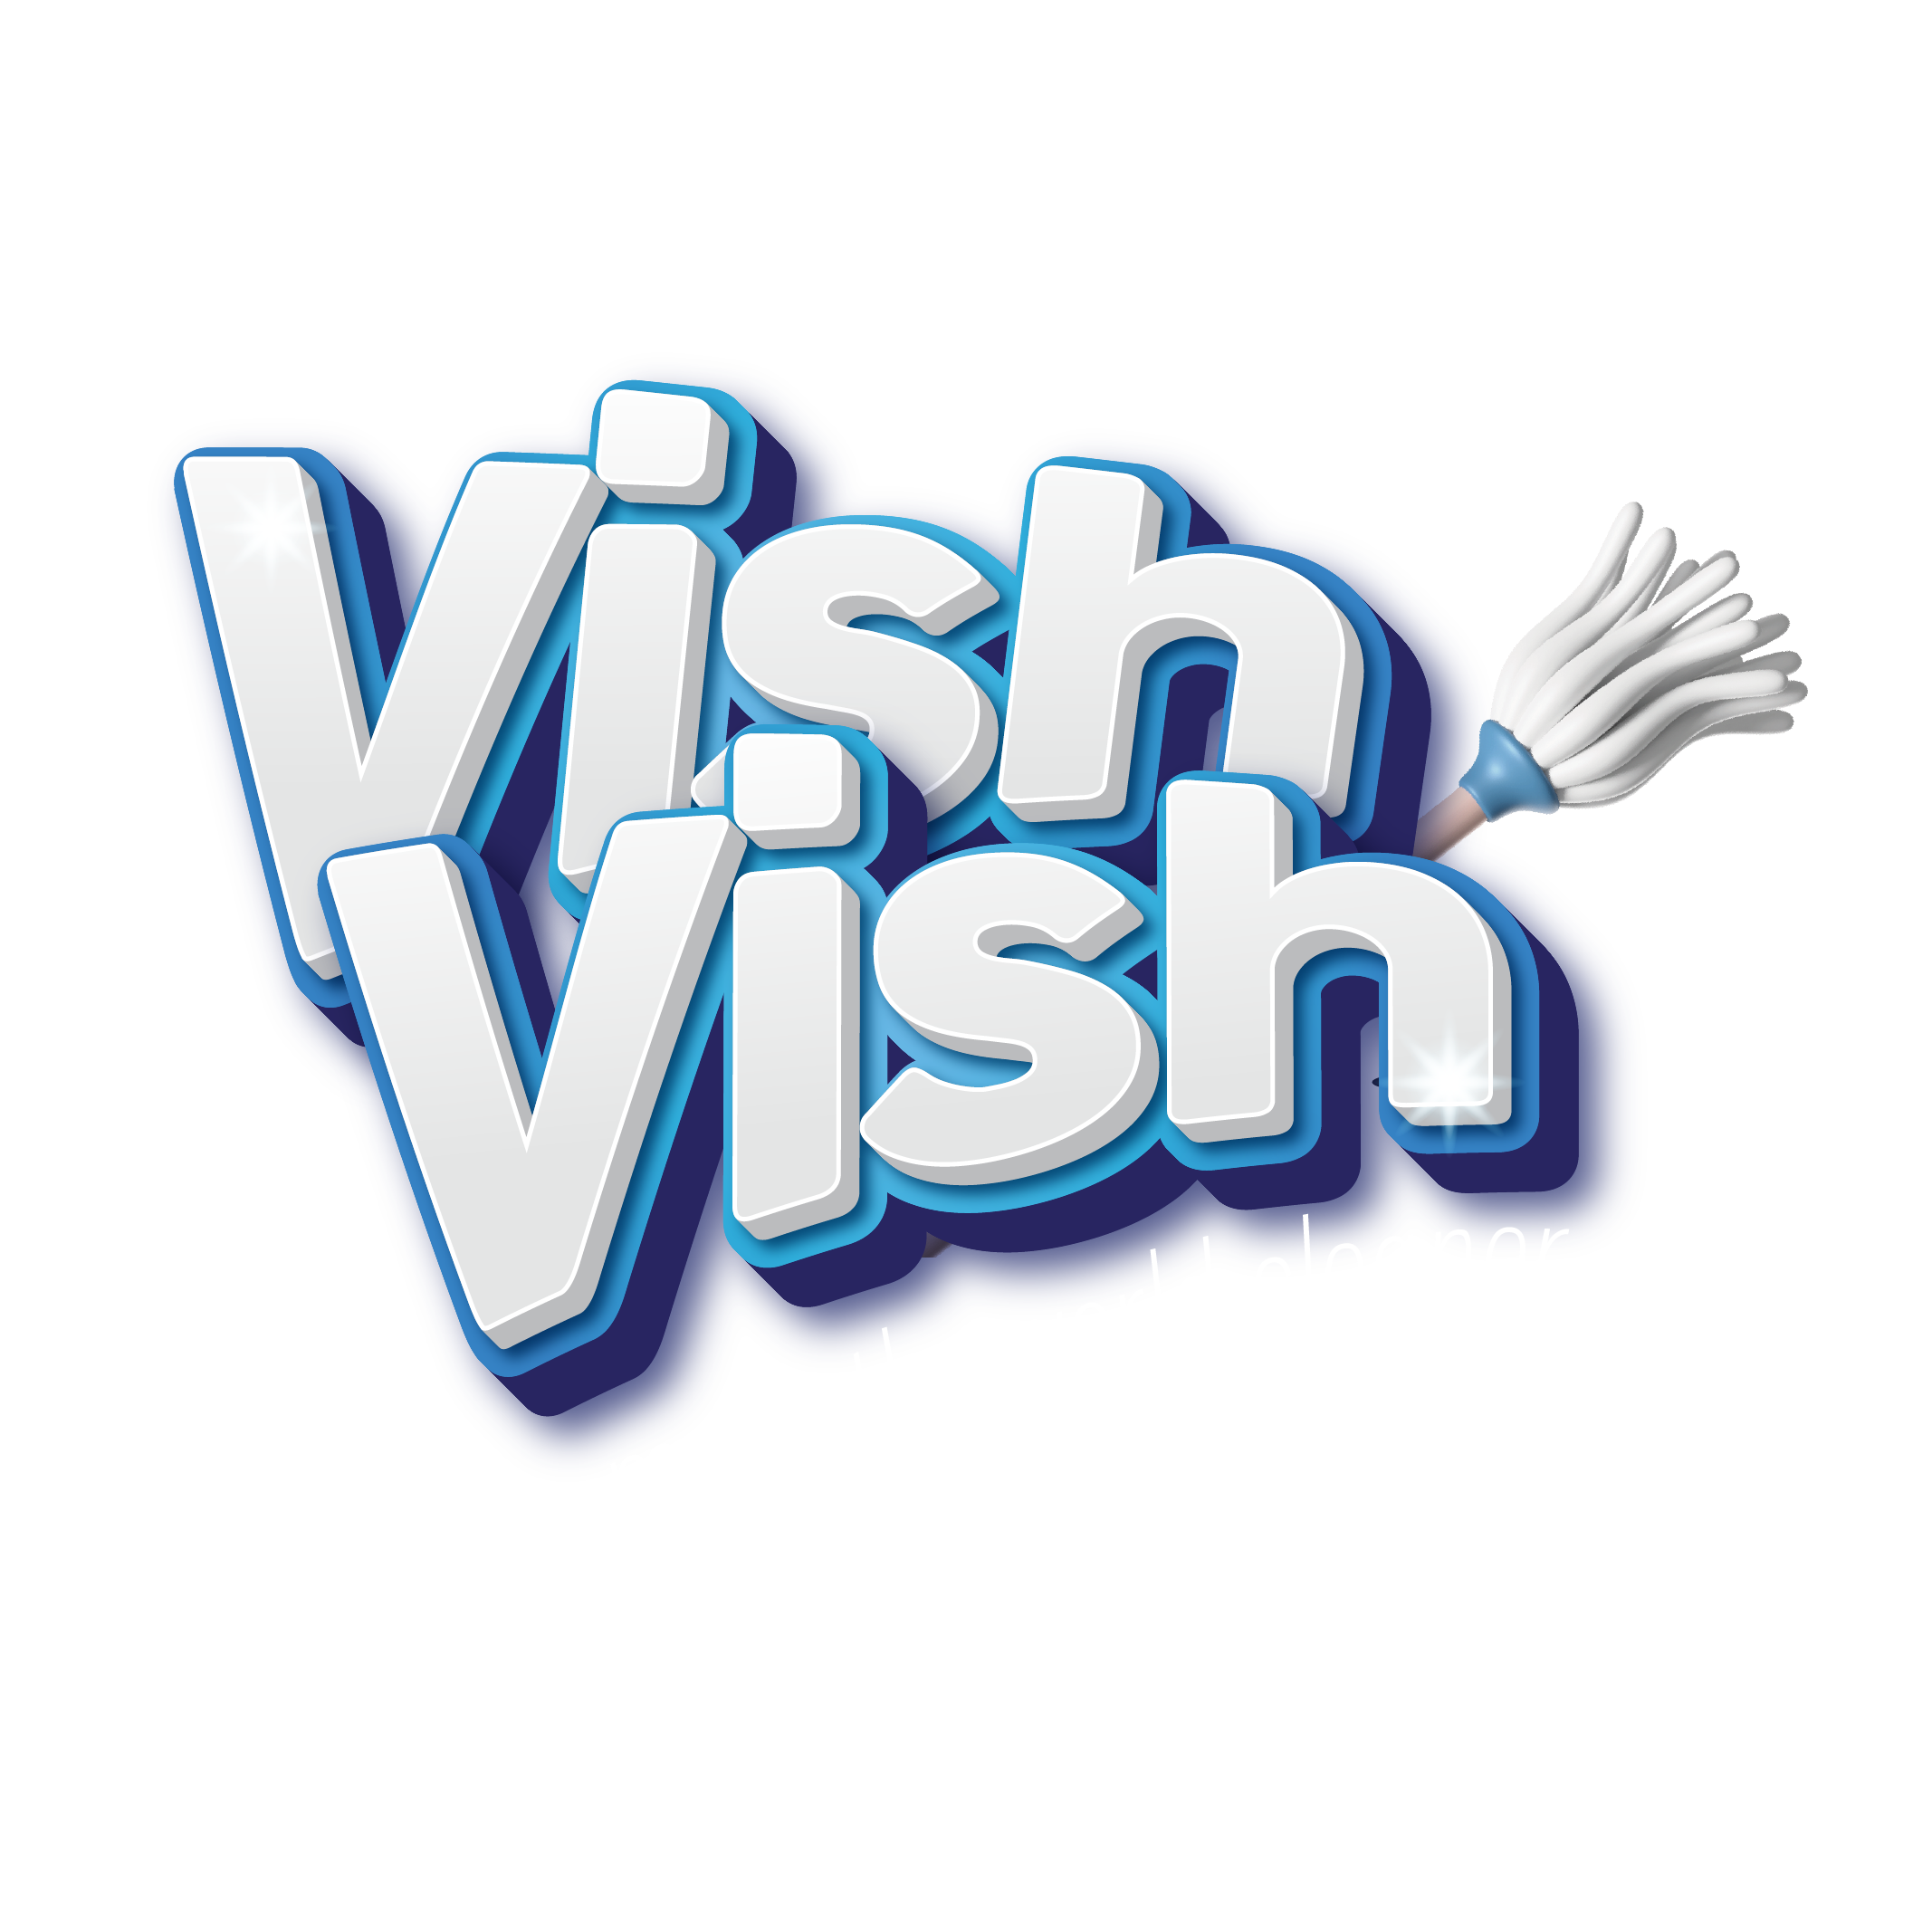 Get VishVish App